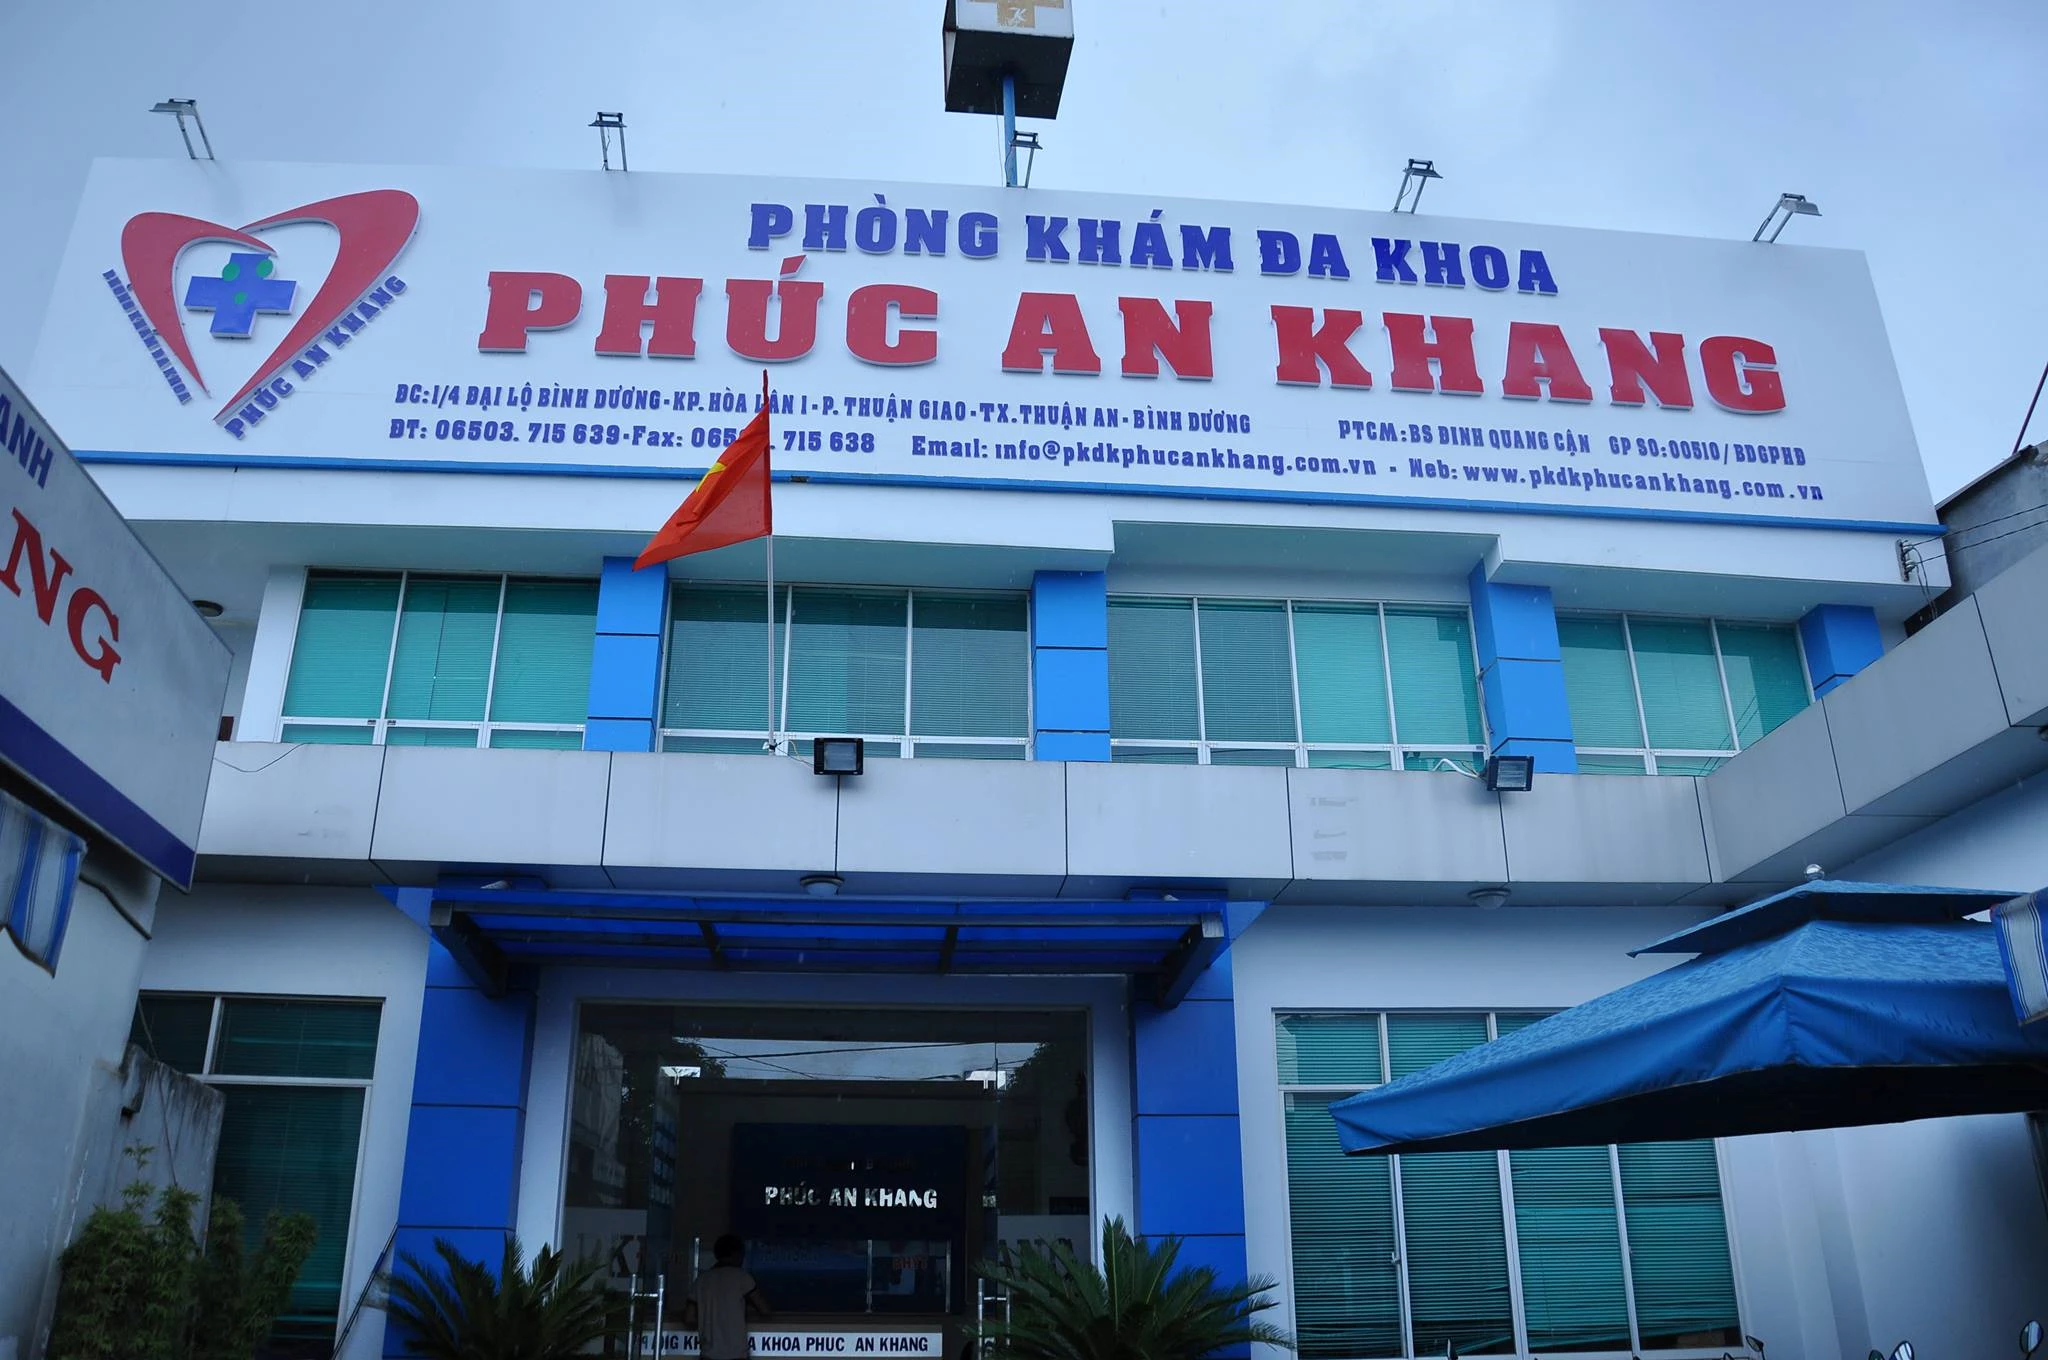 Phòng khám Đa khoa Phúc An Khang (TP Thuận An), bị Sở Y tế Bình Dương yêu cầu tạm dừng hoạt động để phục vụ công tác điều tra, do liên quan đến việc không tiếp nhận bệnh nhân cấp cứu dẫn đến chết người